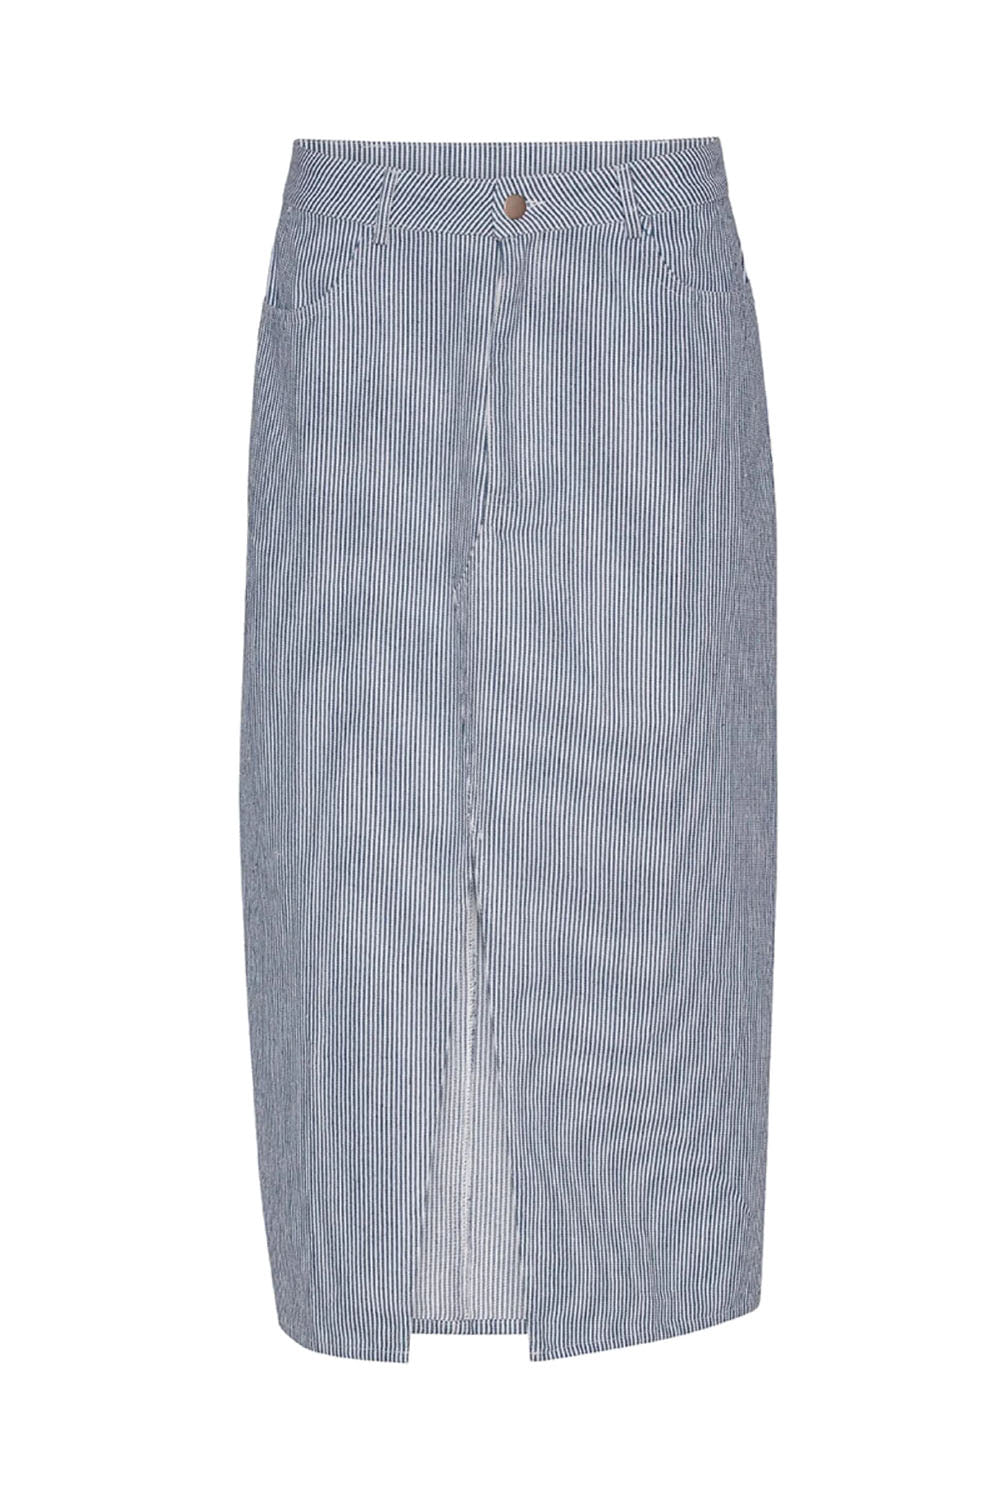 Kana skirt blue/white